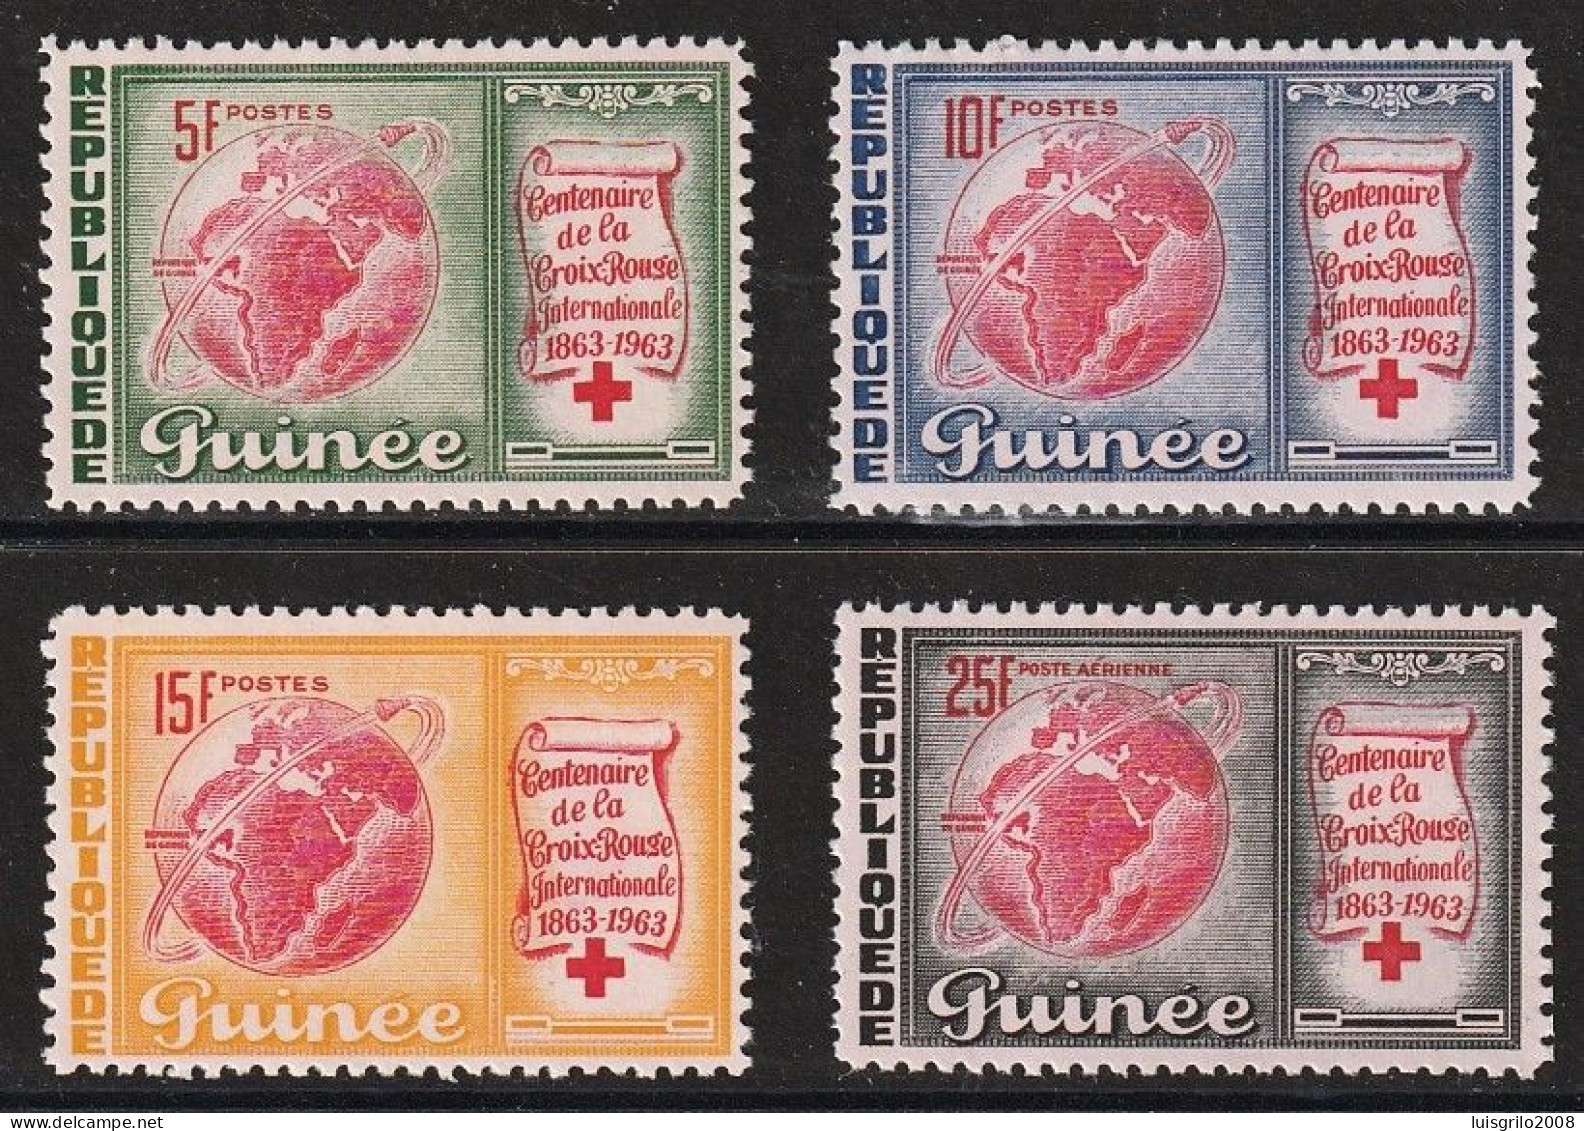 Republique De Guinee 1963 - Red Cross/ Centenaire De La Croix-Rouge -|- Série Compléte - MNH - Rode Kruis